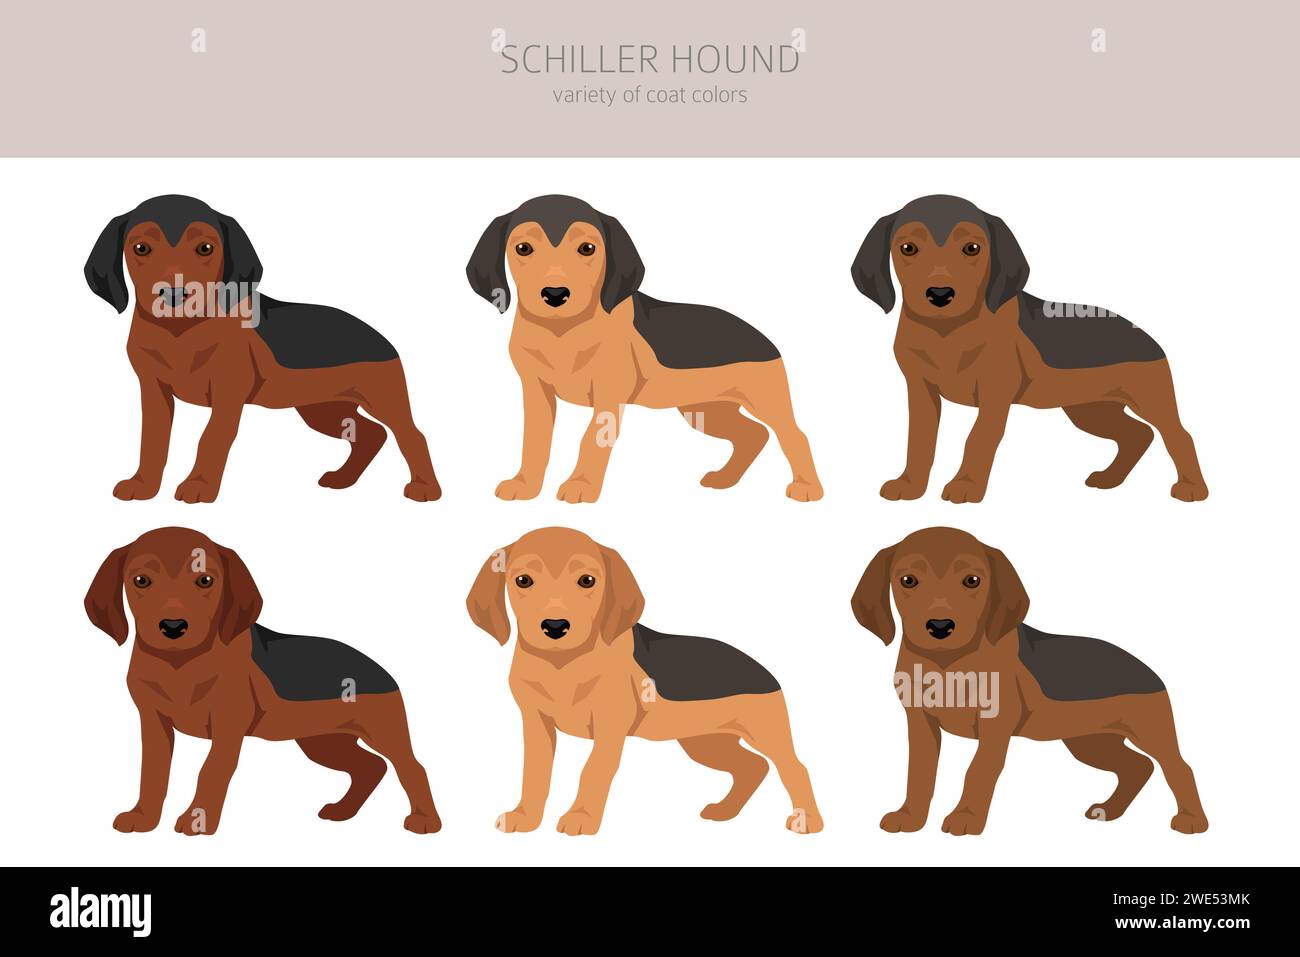 Schiller Hound cuccioli clipart. Tutti i colori del rivestimento sono impostati. Infografica sulle caratteristiche di tutte le razze di cane. Illustrazione vettoriale Illustrazione Vettoriale